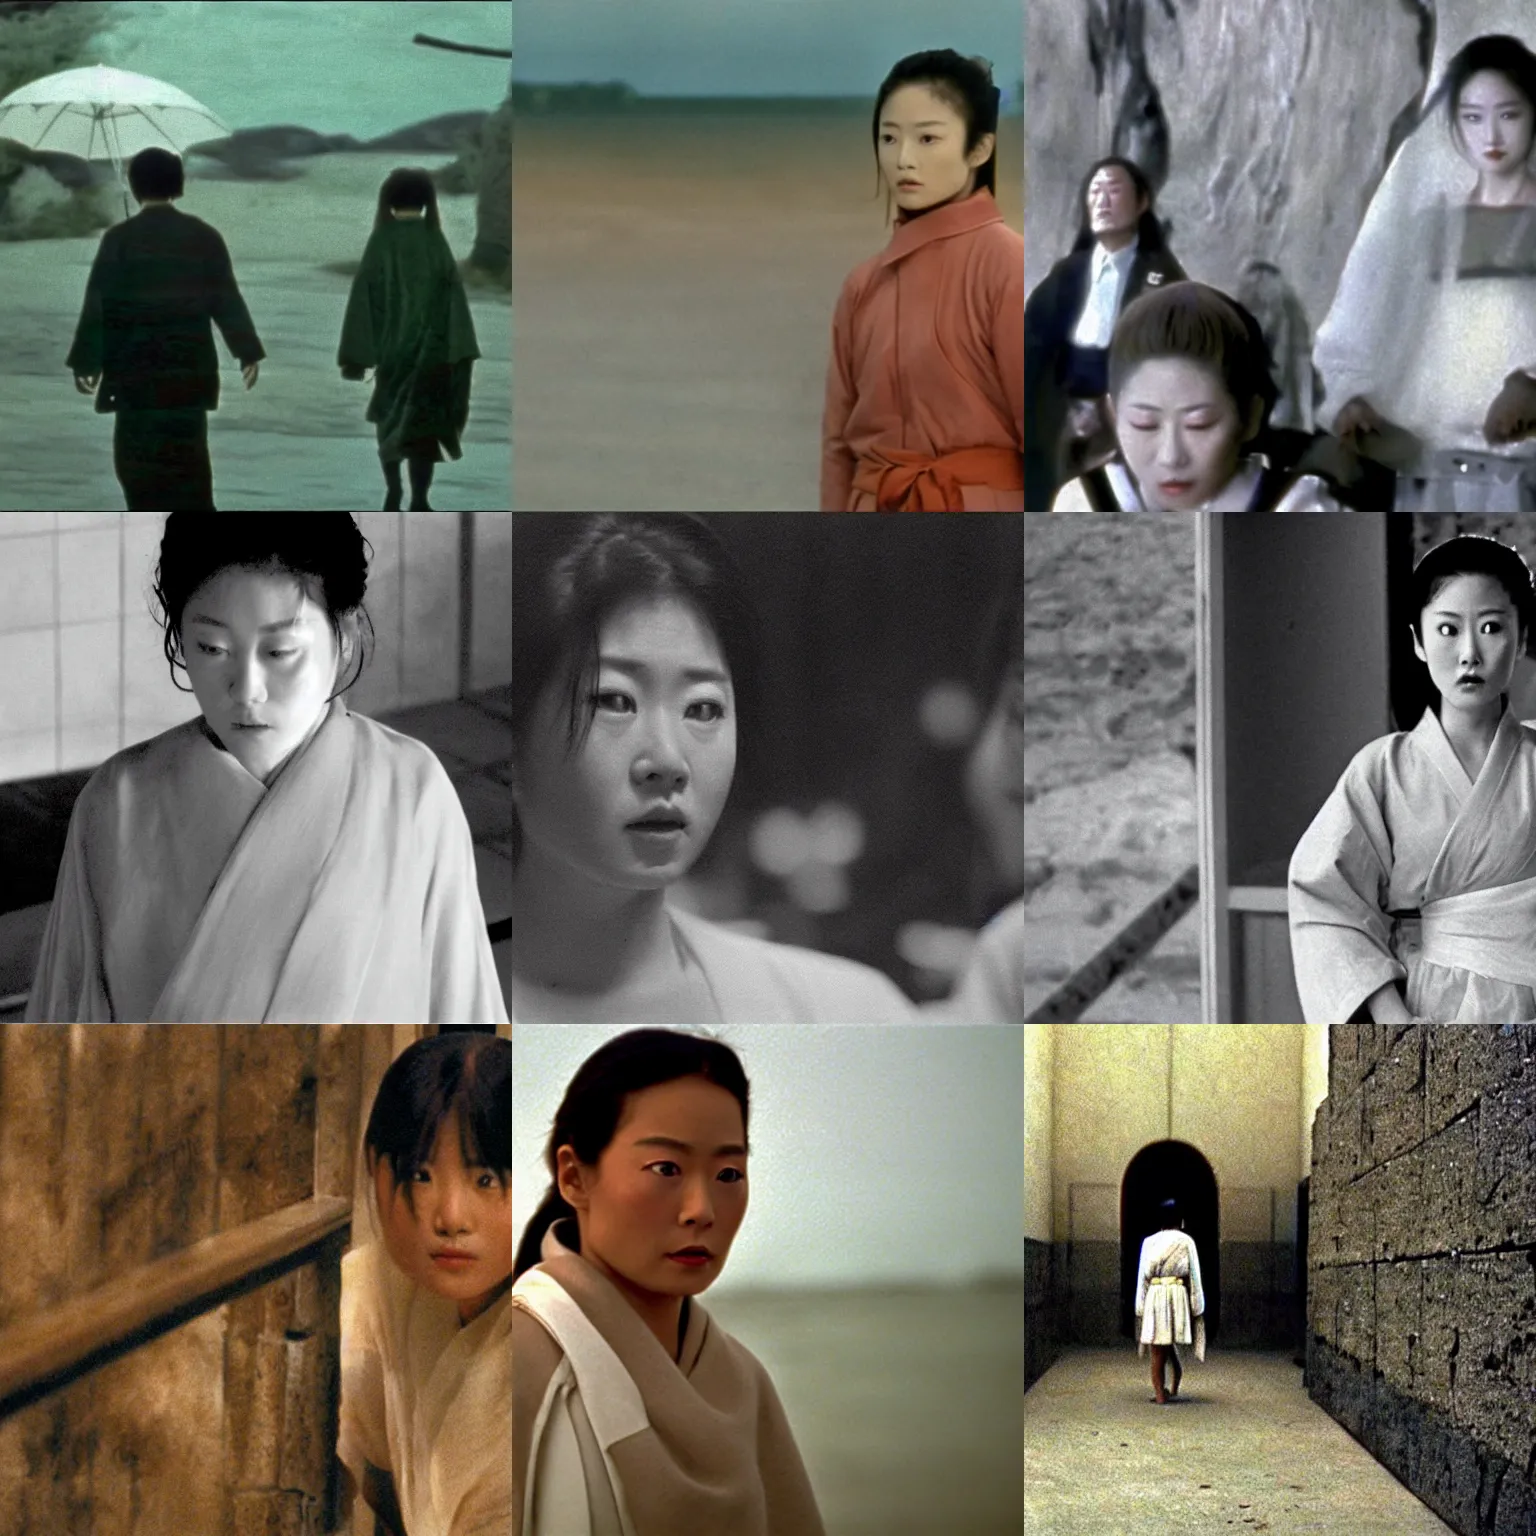 Prompt: a film still from dreams ( 1 9 9 0, by akira kurosawa )